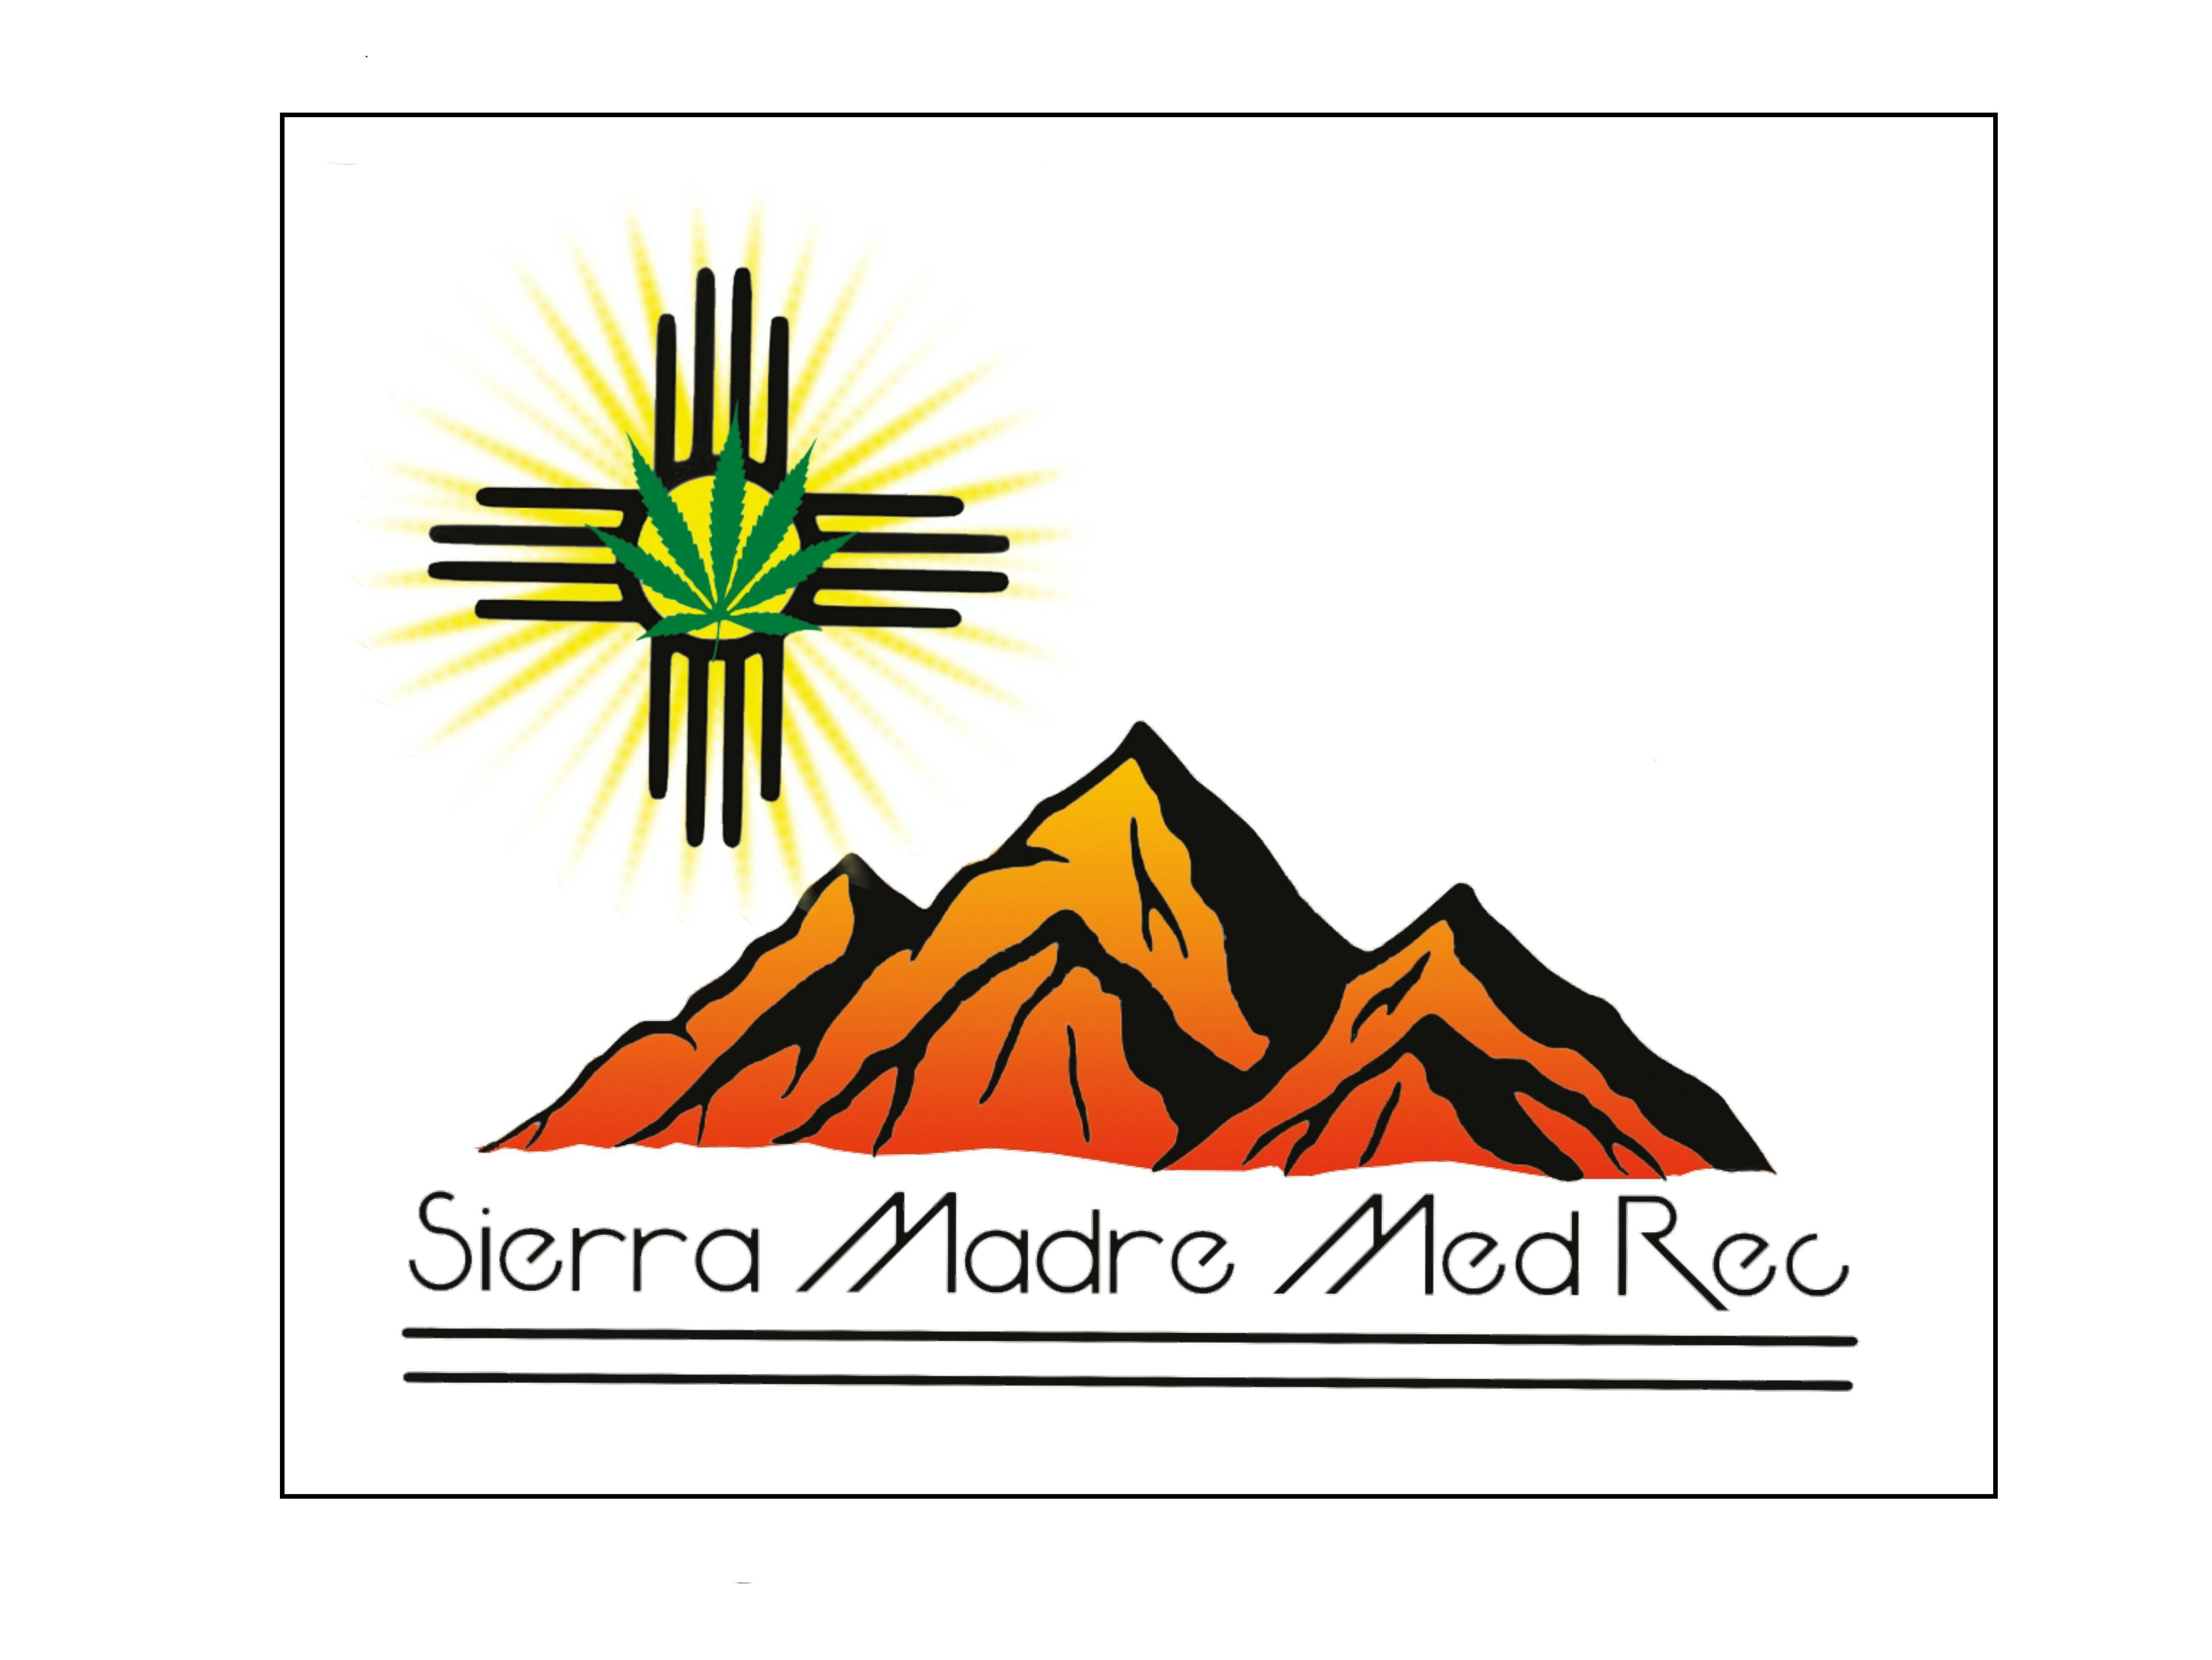 Sierra Madre Med. Rec. logo